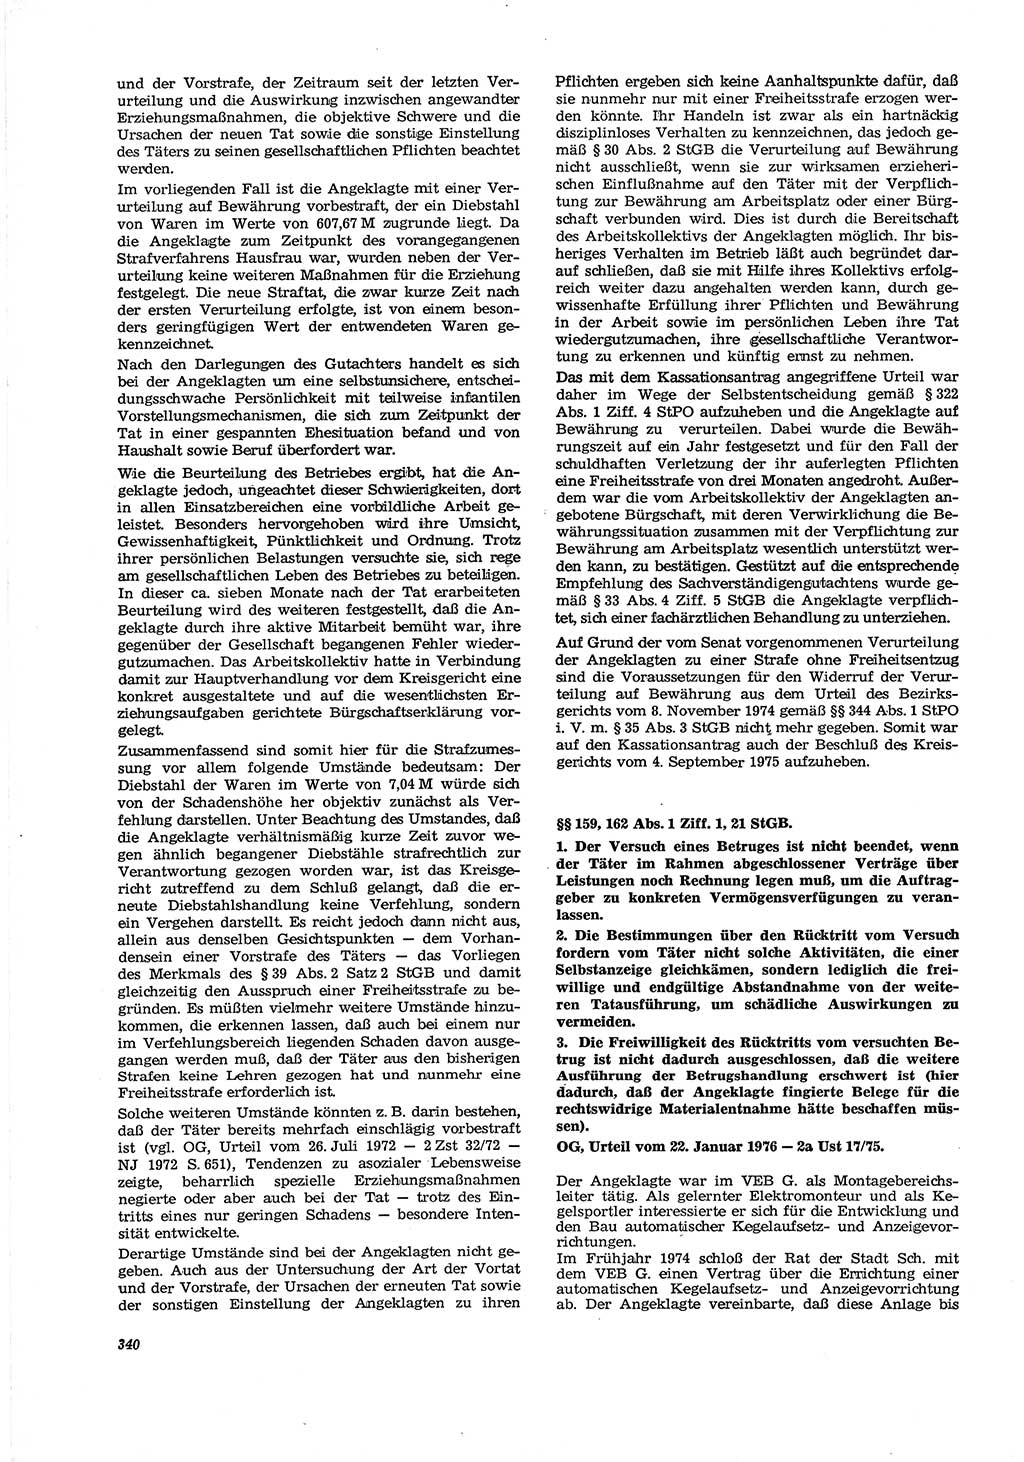 Neue Justiz (NJ), Zeitschrift für Recht und Rechtswissenschaft [Deutsche Demokratische Republik (DDR)], 30. Jahrgang 1976, Seite 340 (NJ DDR 1976, S. 340)